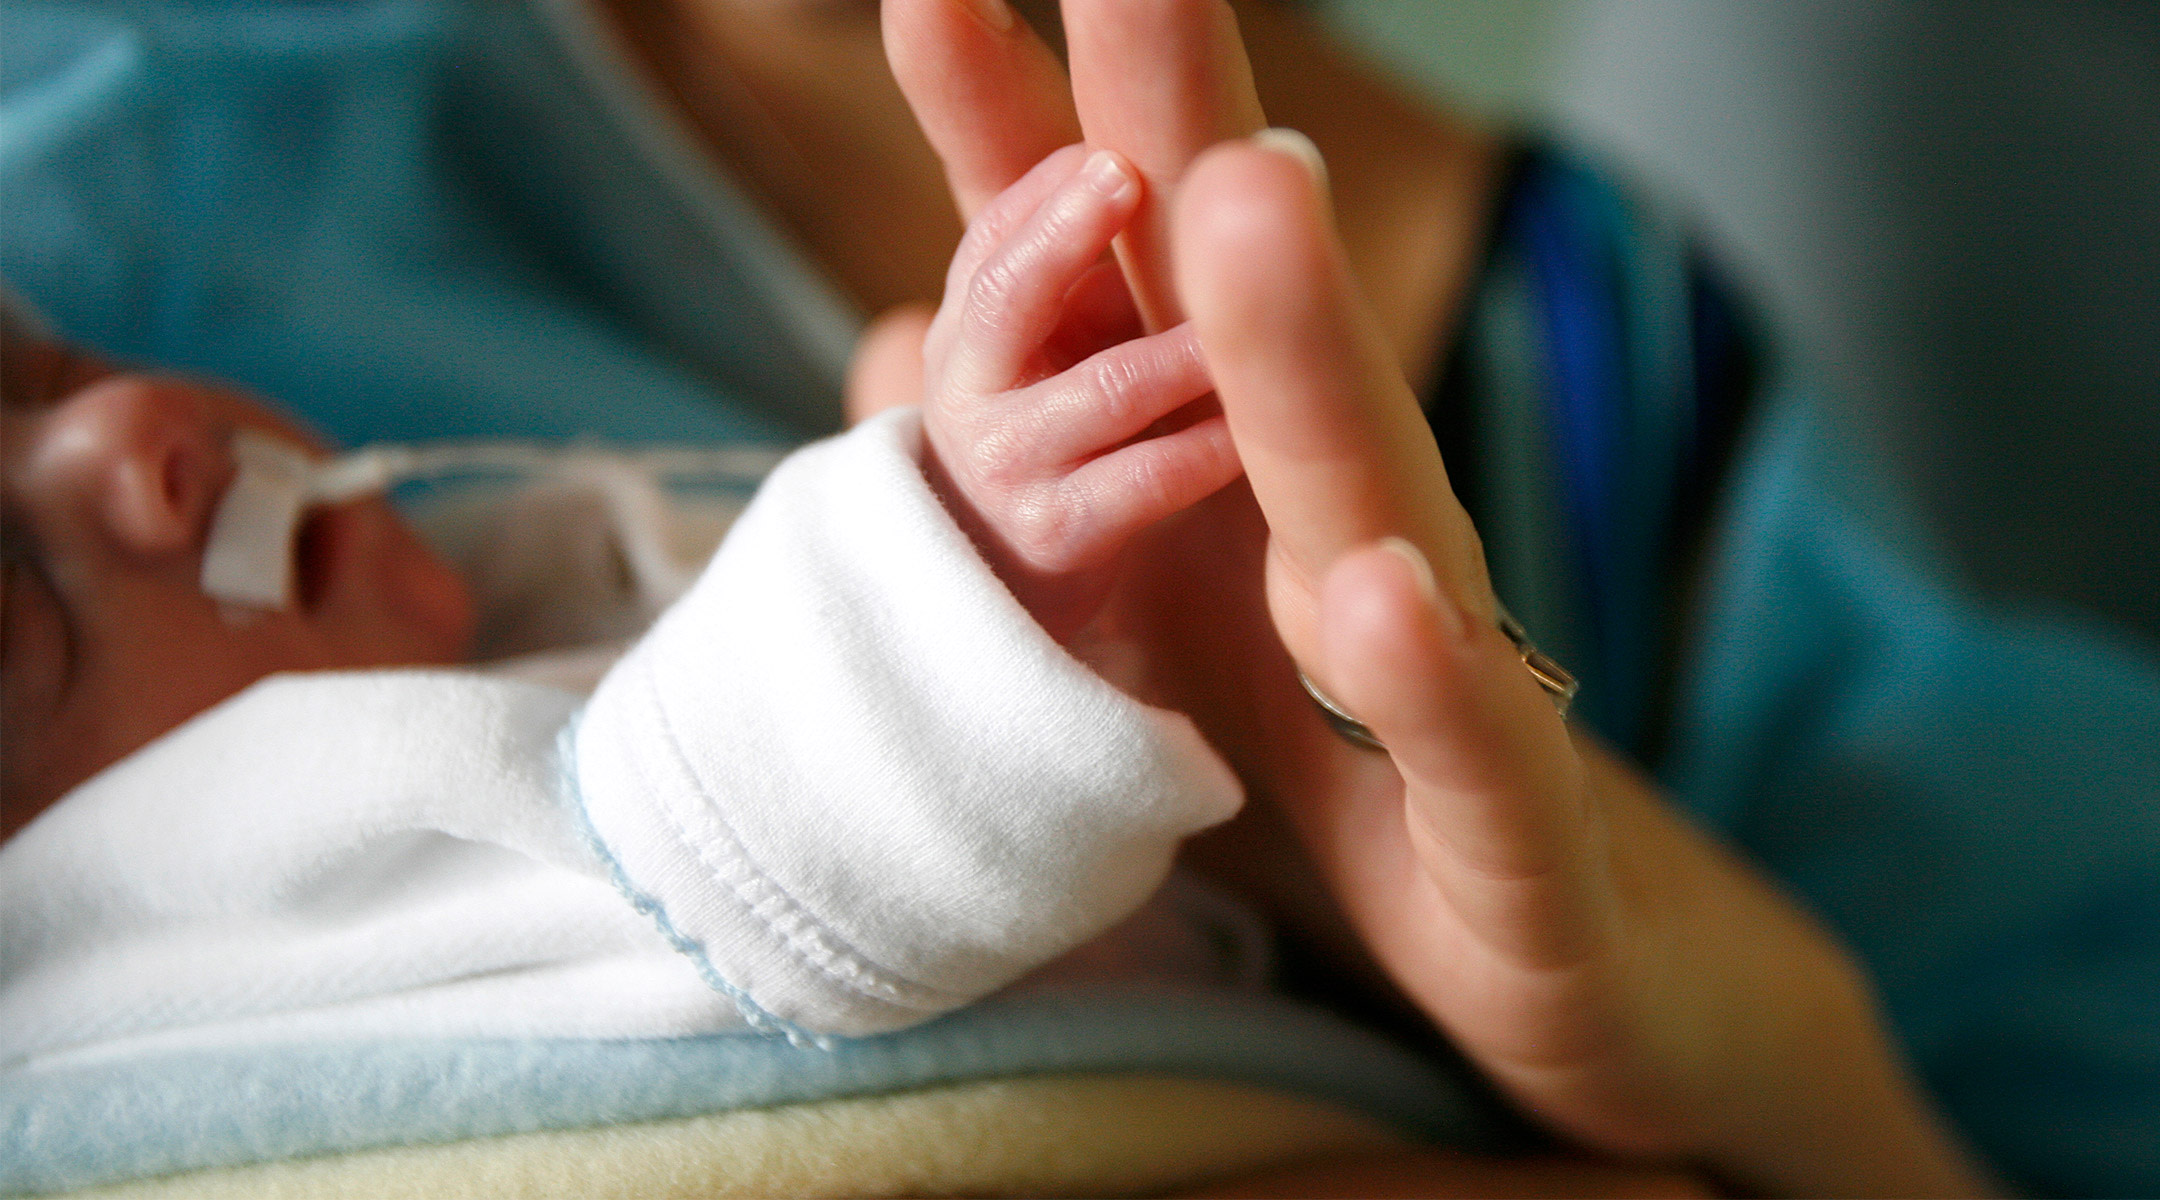 preemie baby being held at hospital